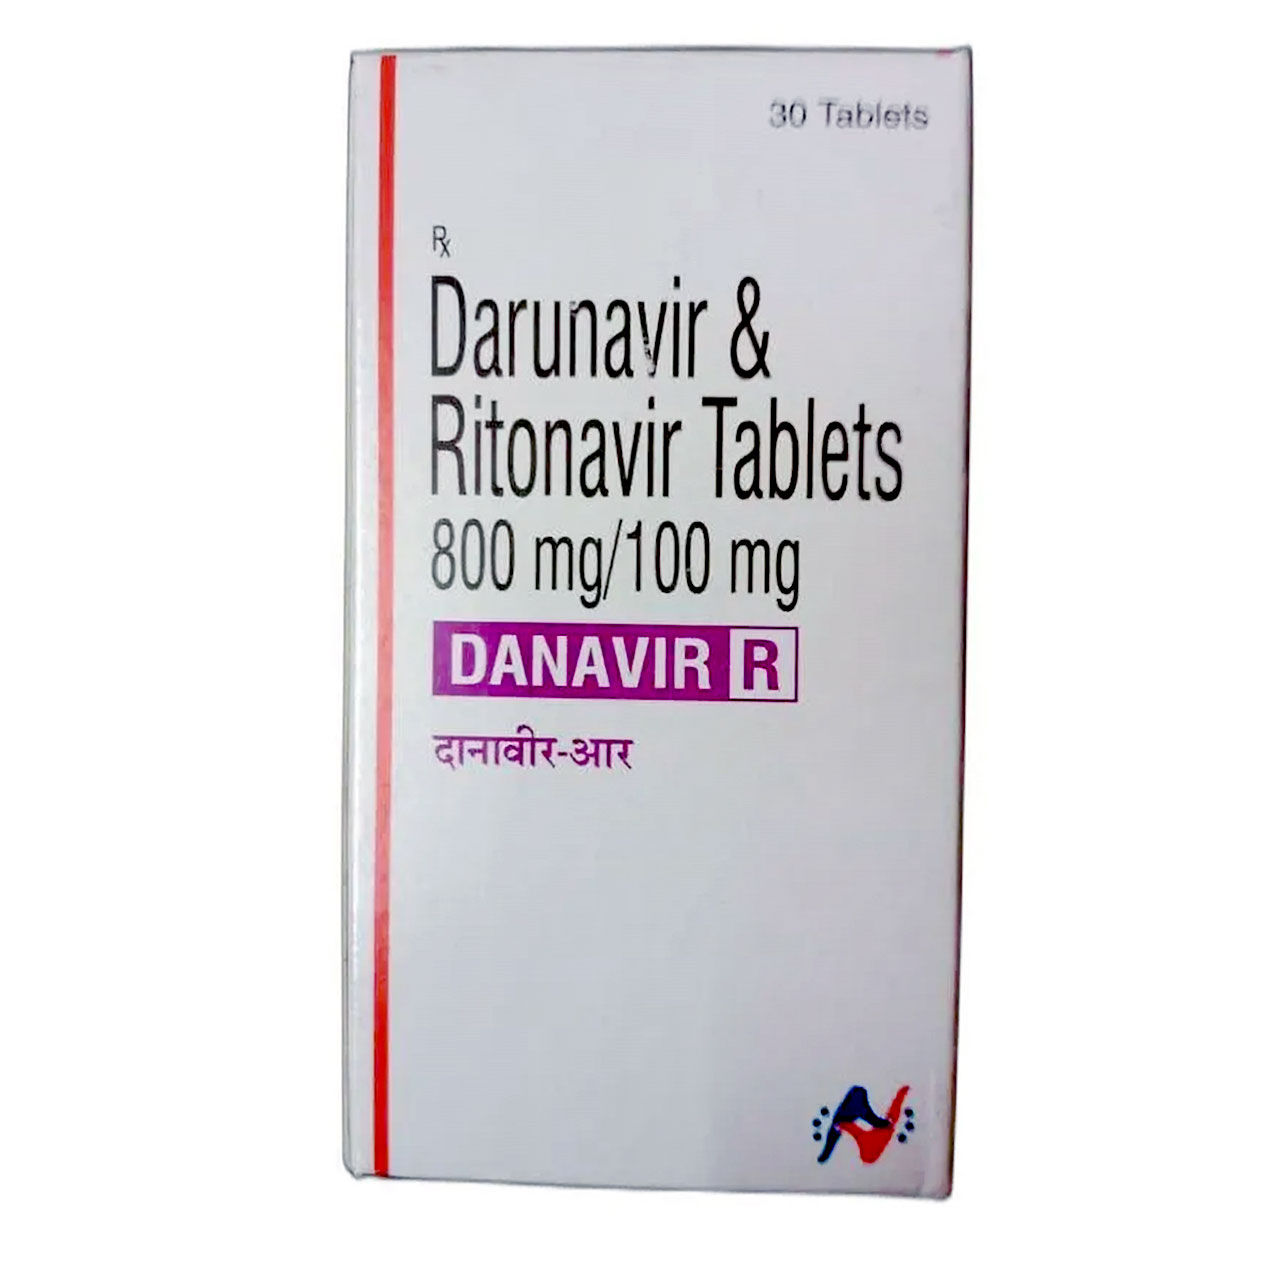 Buy Danavir R Tablet 30's Online